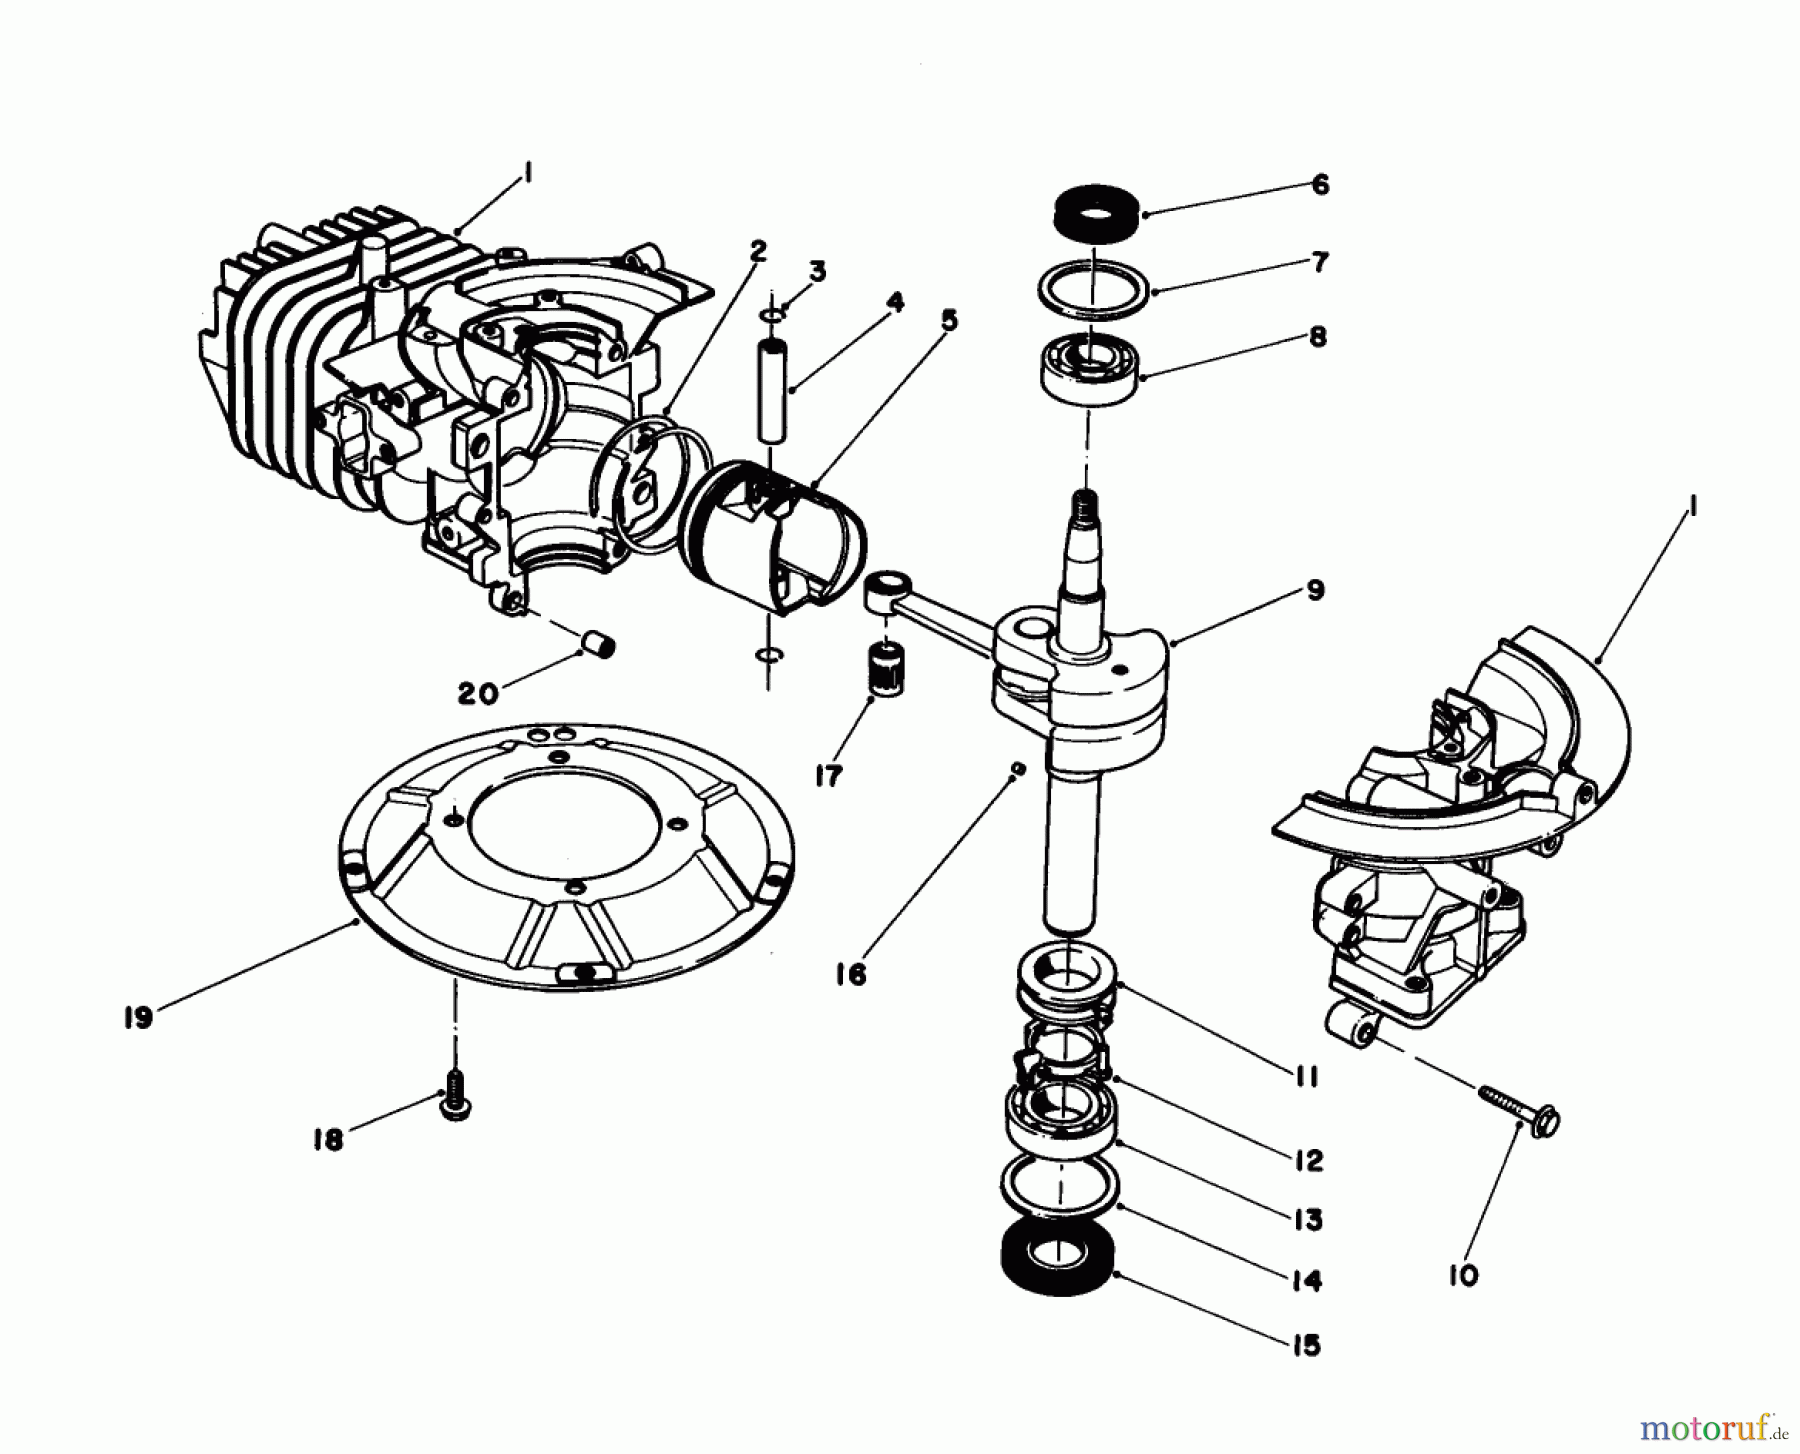  Toro Neu Engines 59255 - Toro Replacement Engine, 2-Cycle (Zone Start), 1984 (4000001-4999999) SHORT BLOCK ASSEMBLY